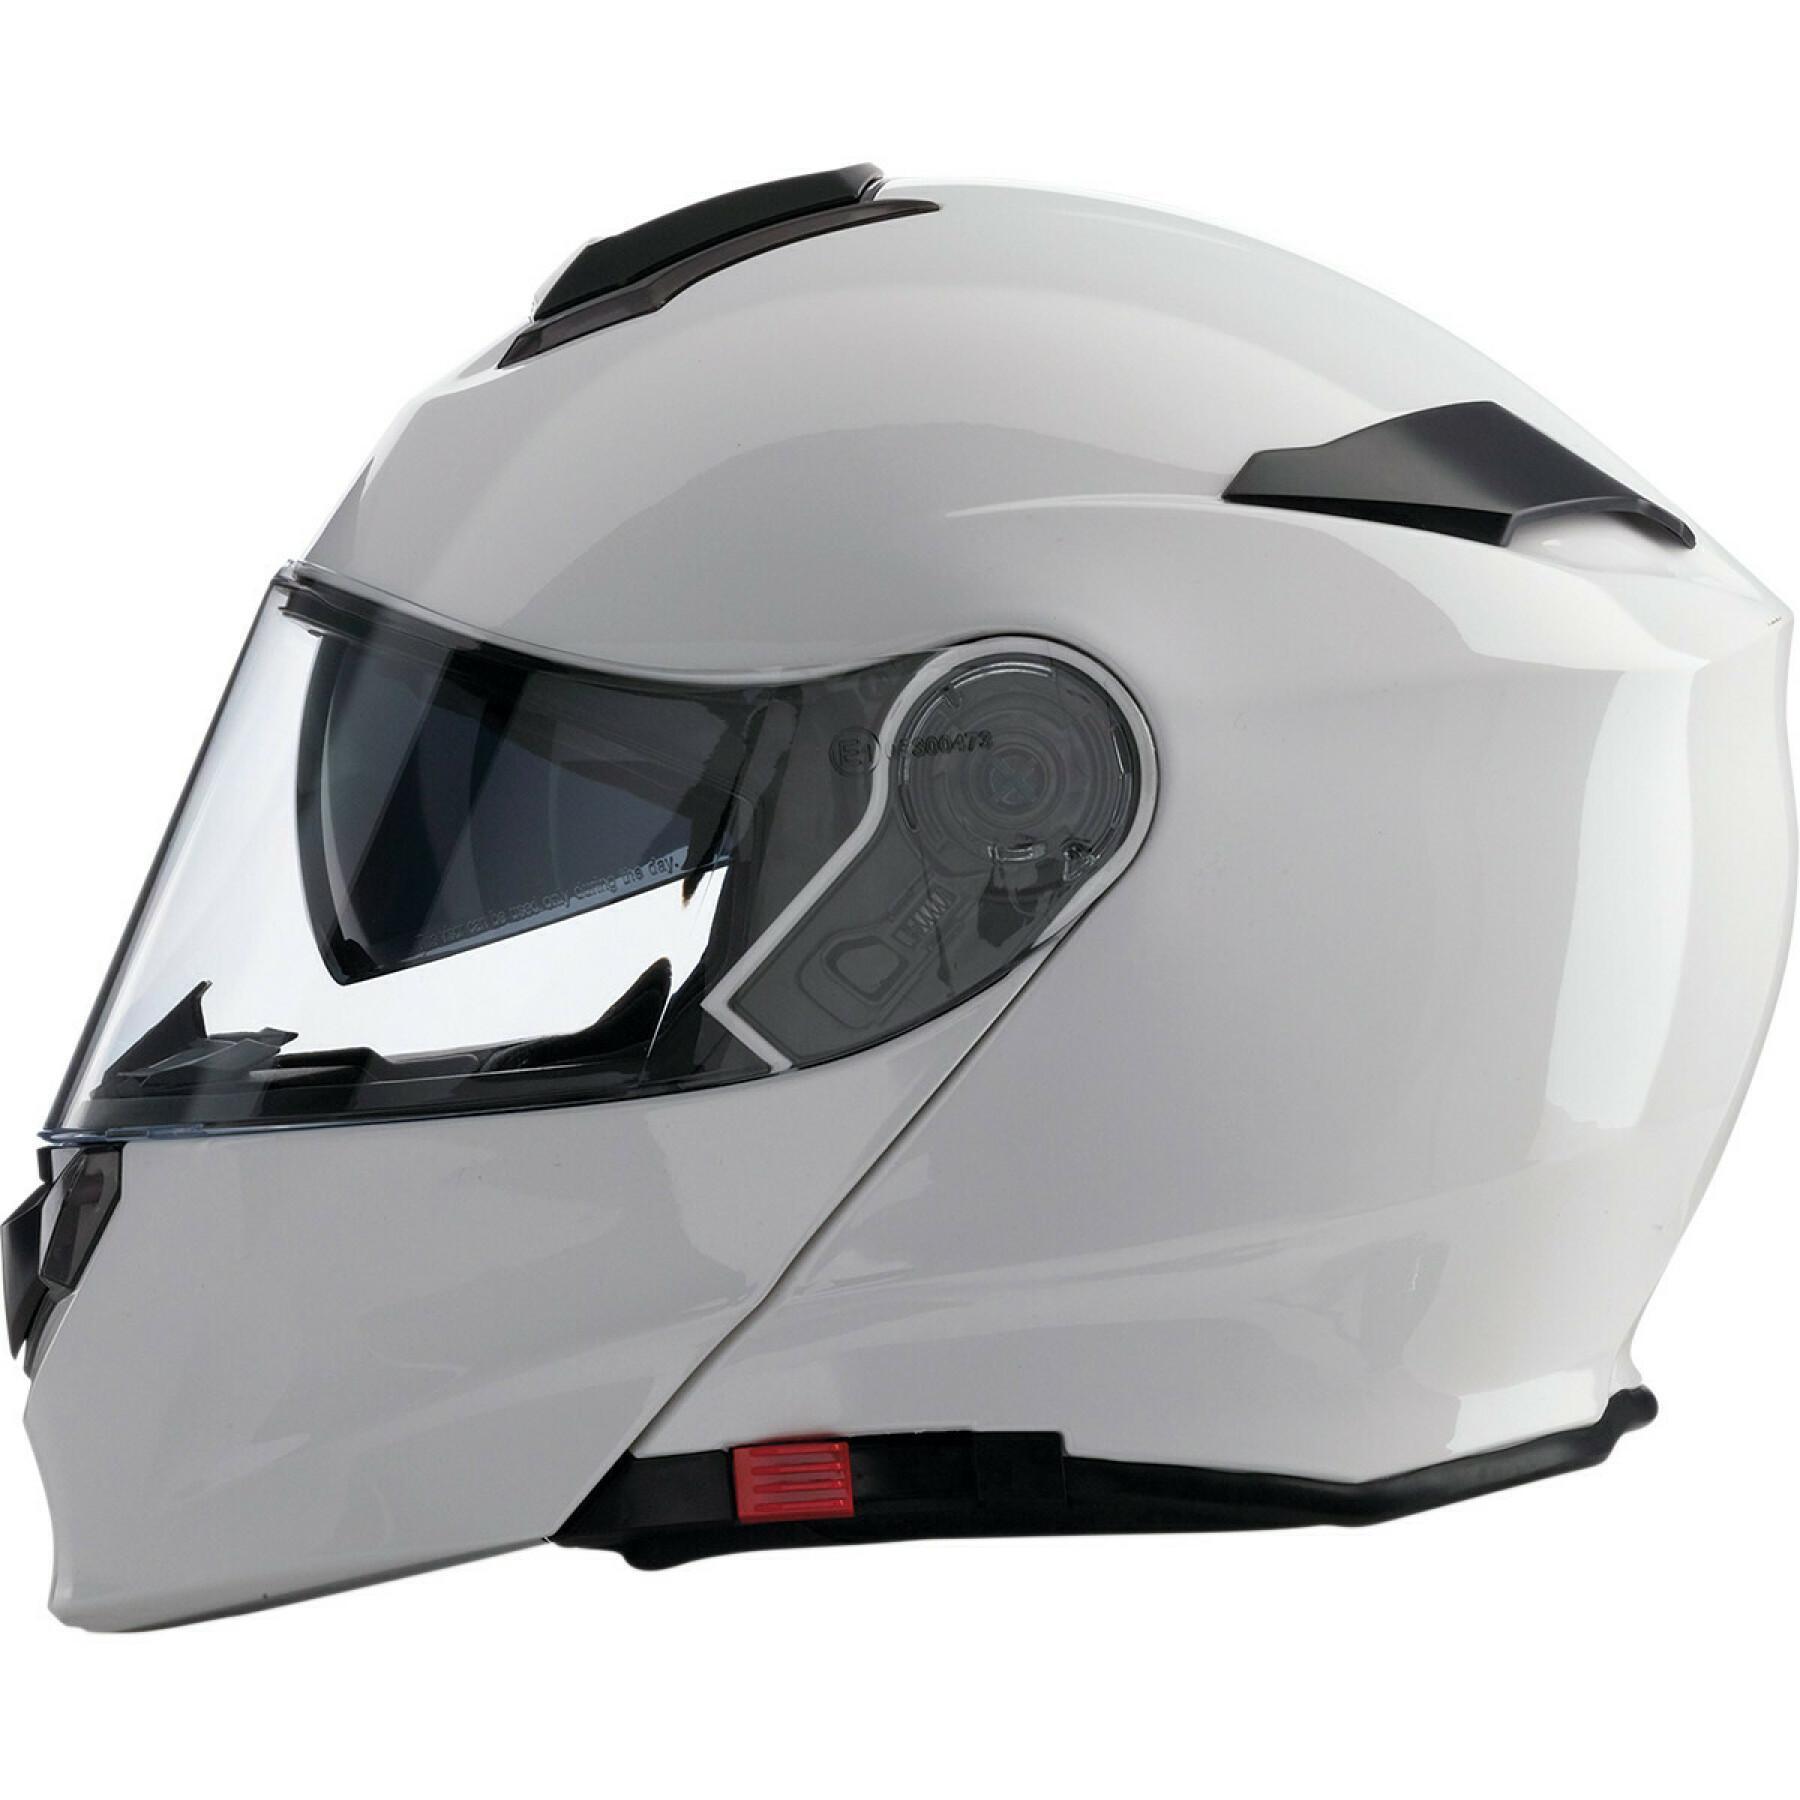 Full face motorcycle helmet Z1R solaris white